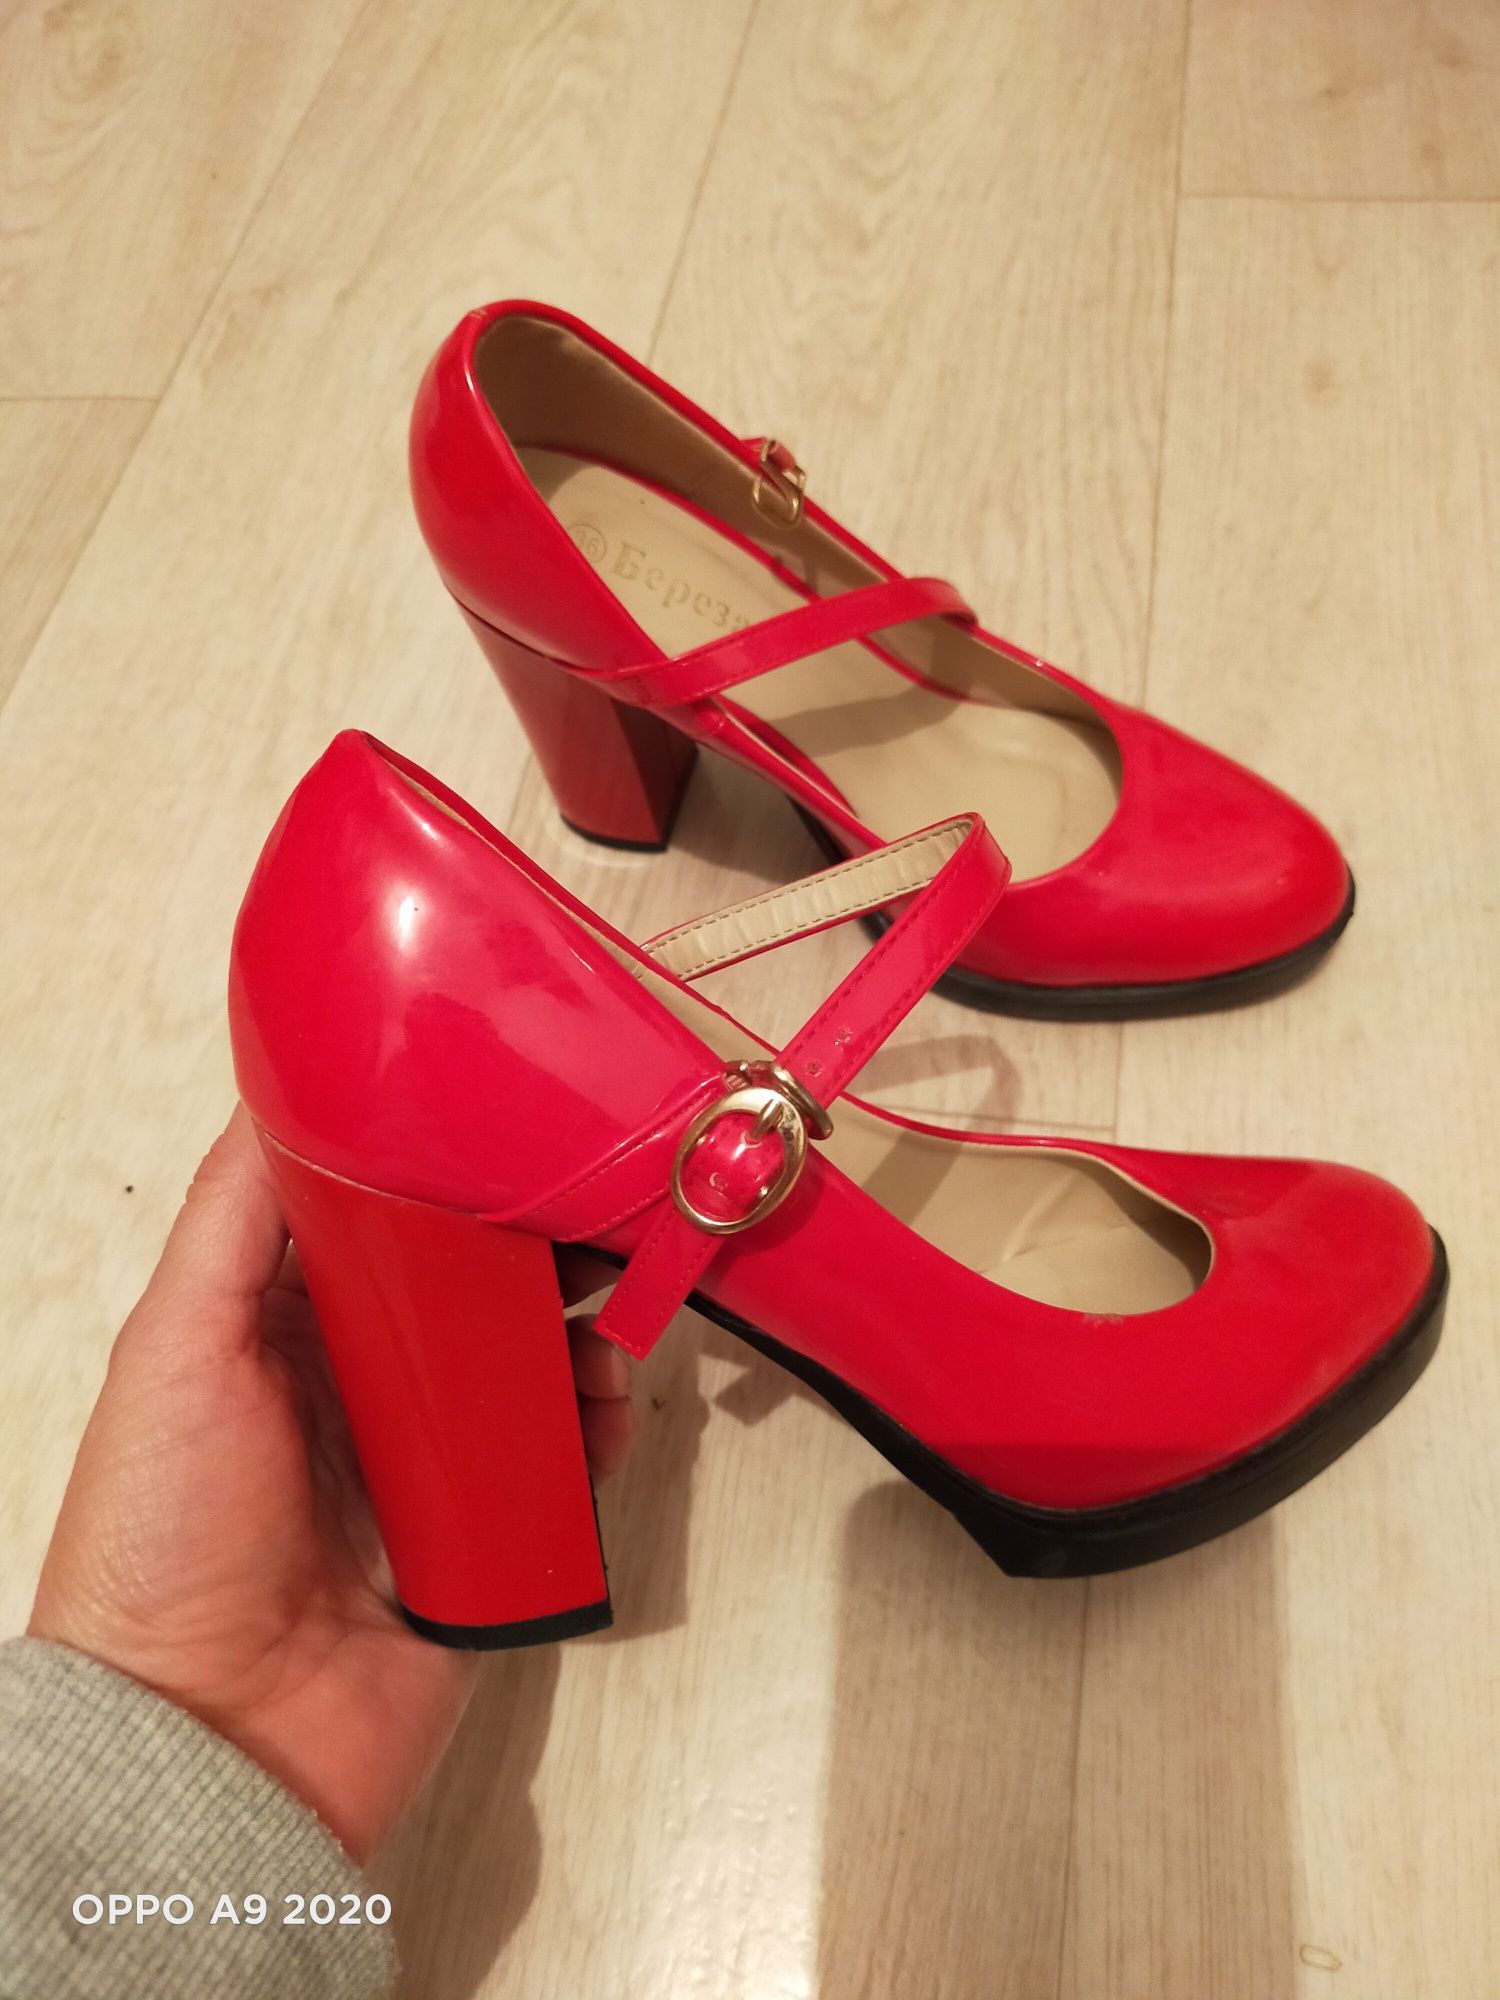 Продам туфли  красного цвета,лакированные 36 размер